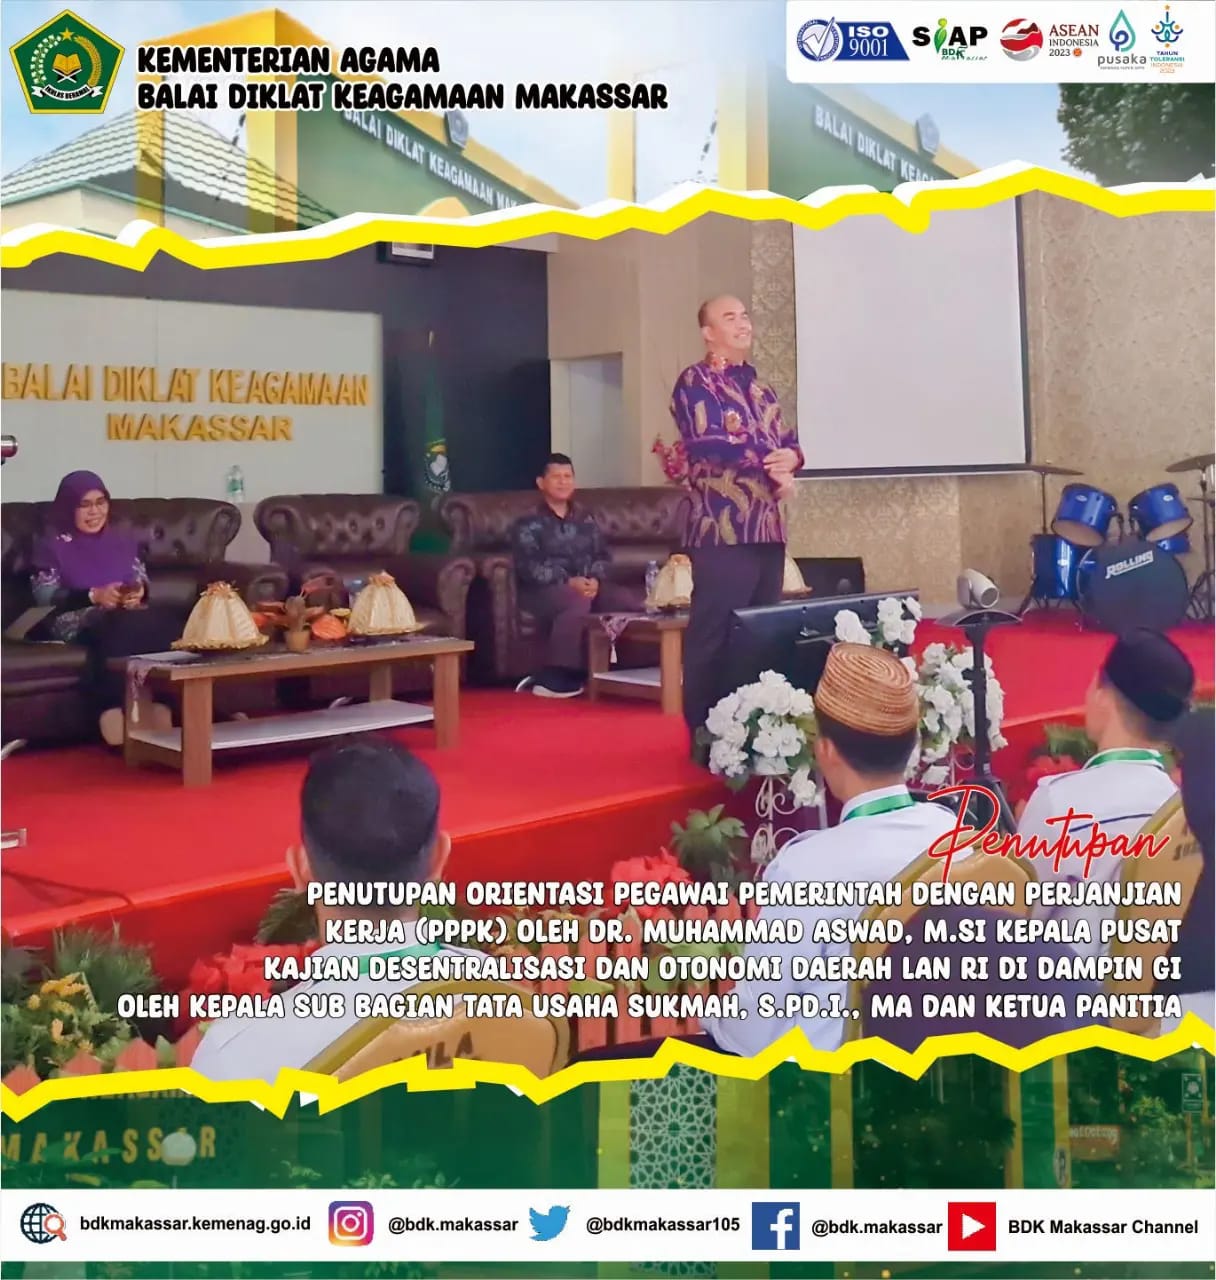 Penutupan Orientasi Pegawai Pemerintah dengan Perjanjian Kerja (PPPK) Periode VII  di BDK Makassar